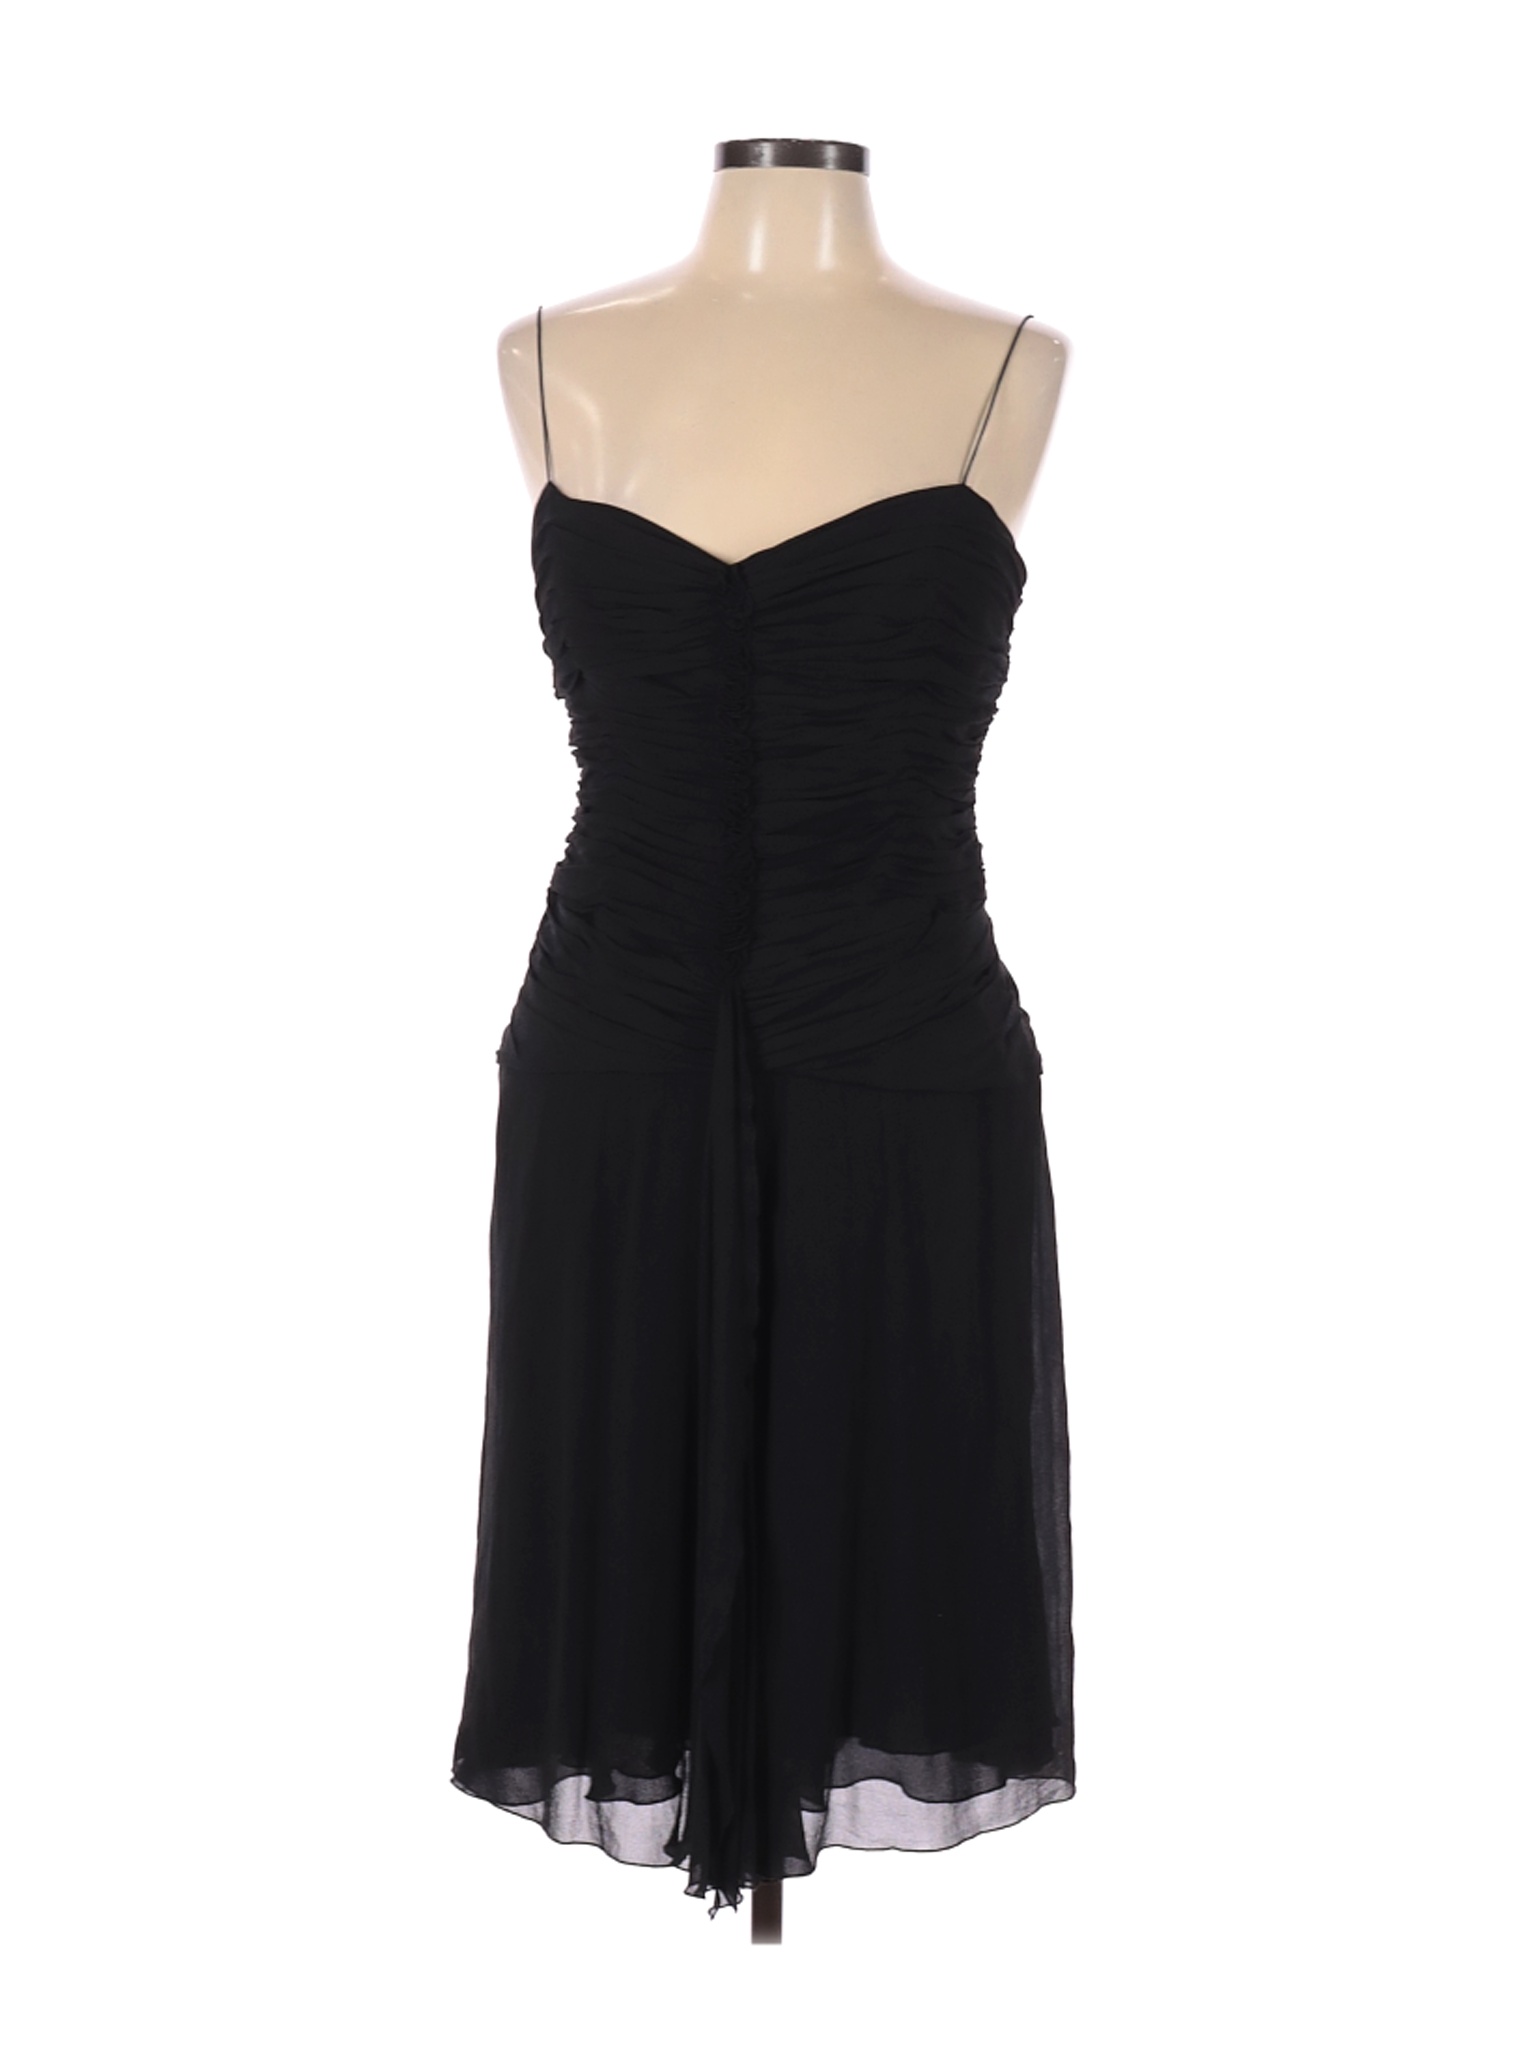 Anne Klein Women Black Cocktail Dress 14 | eBay